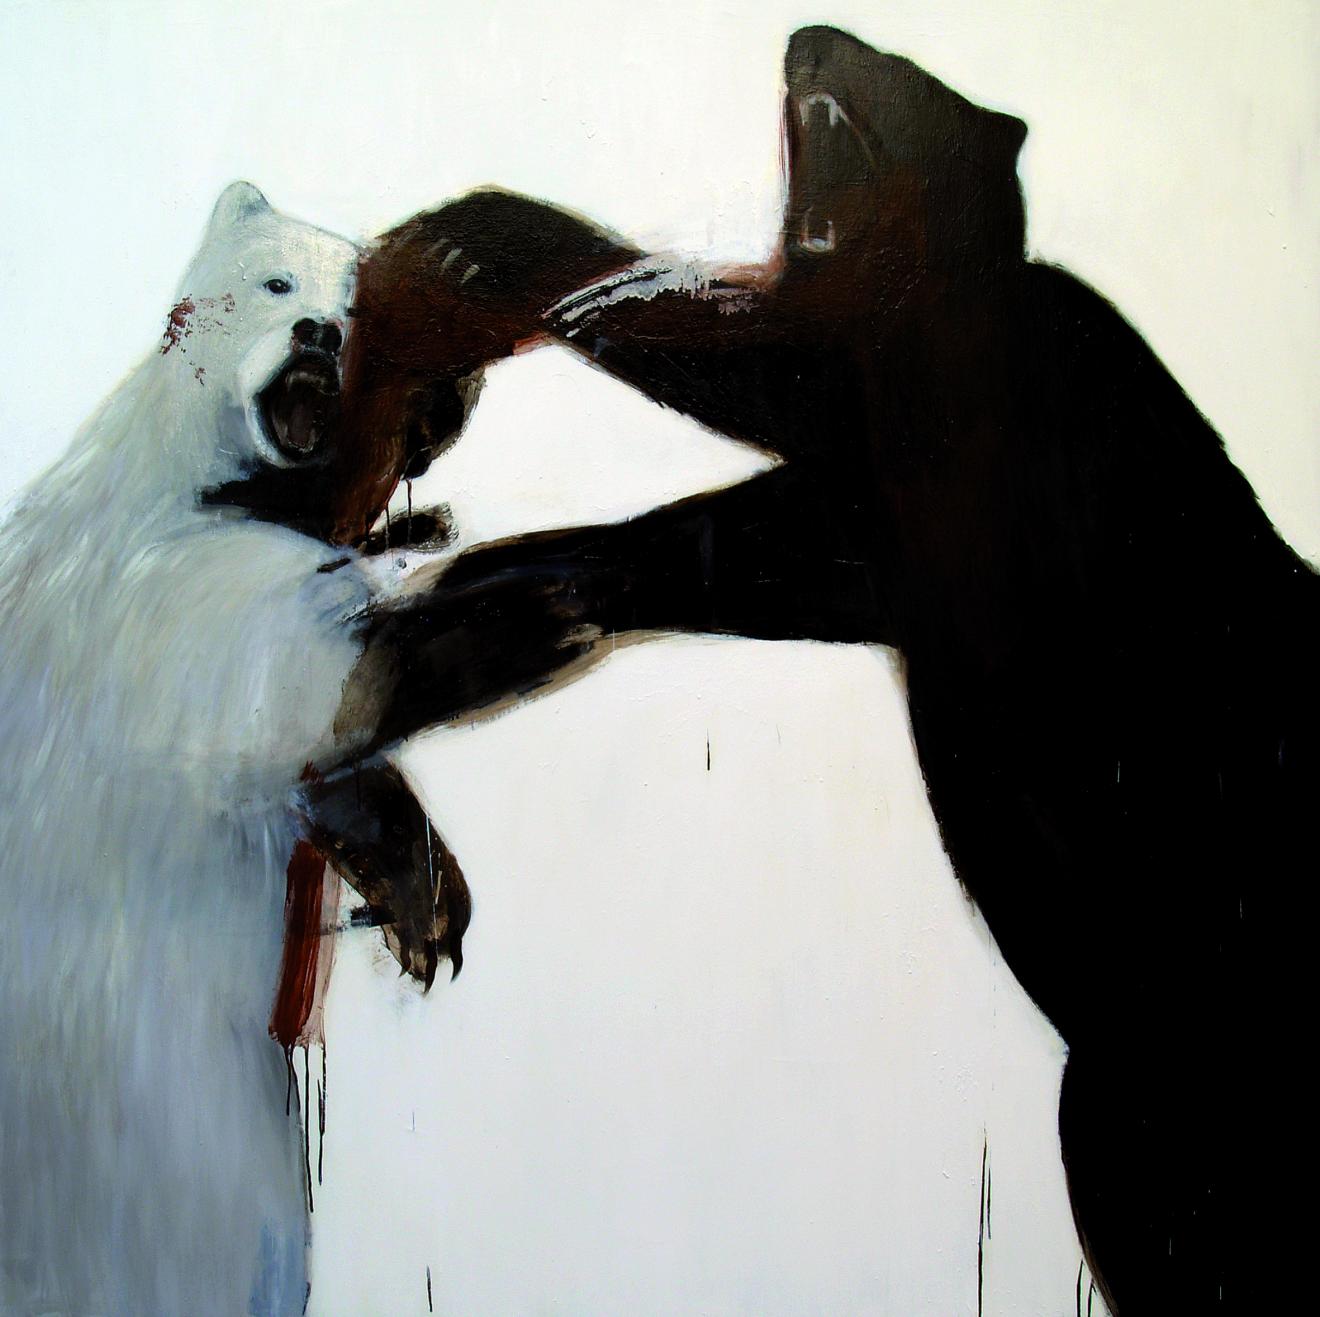 Dos osos, uno blanco y uno pardo, pelean apoyados sobre sus patas traseras